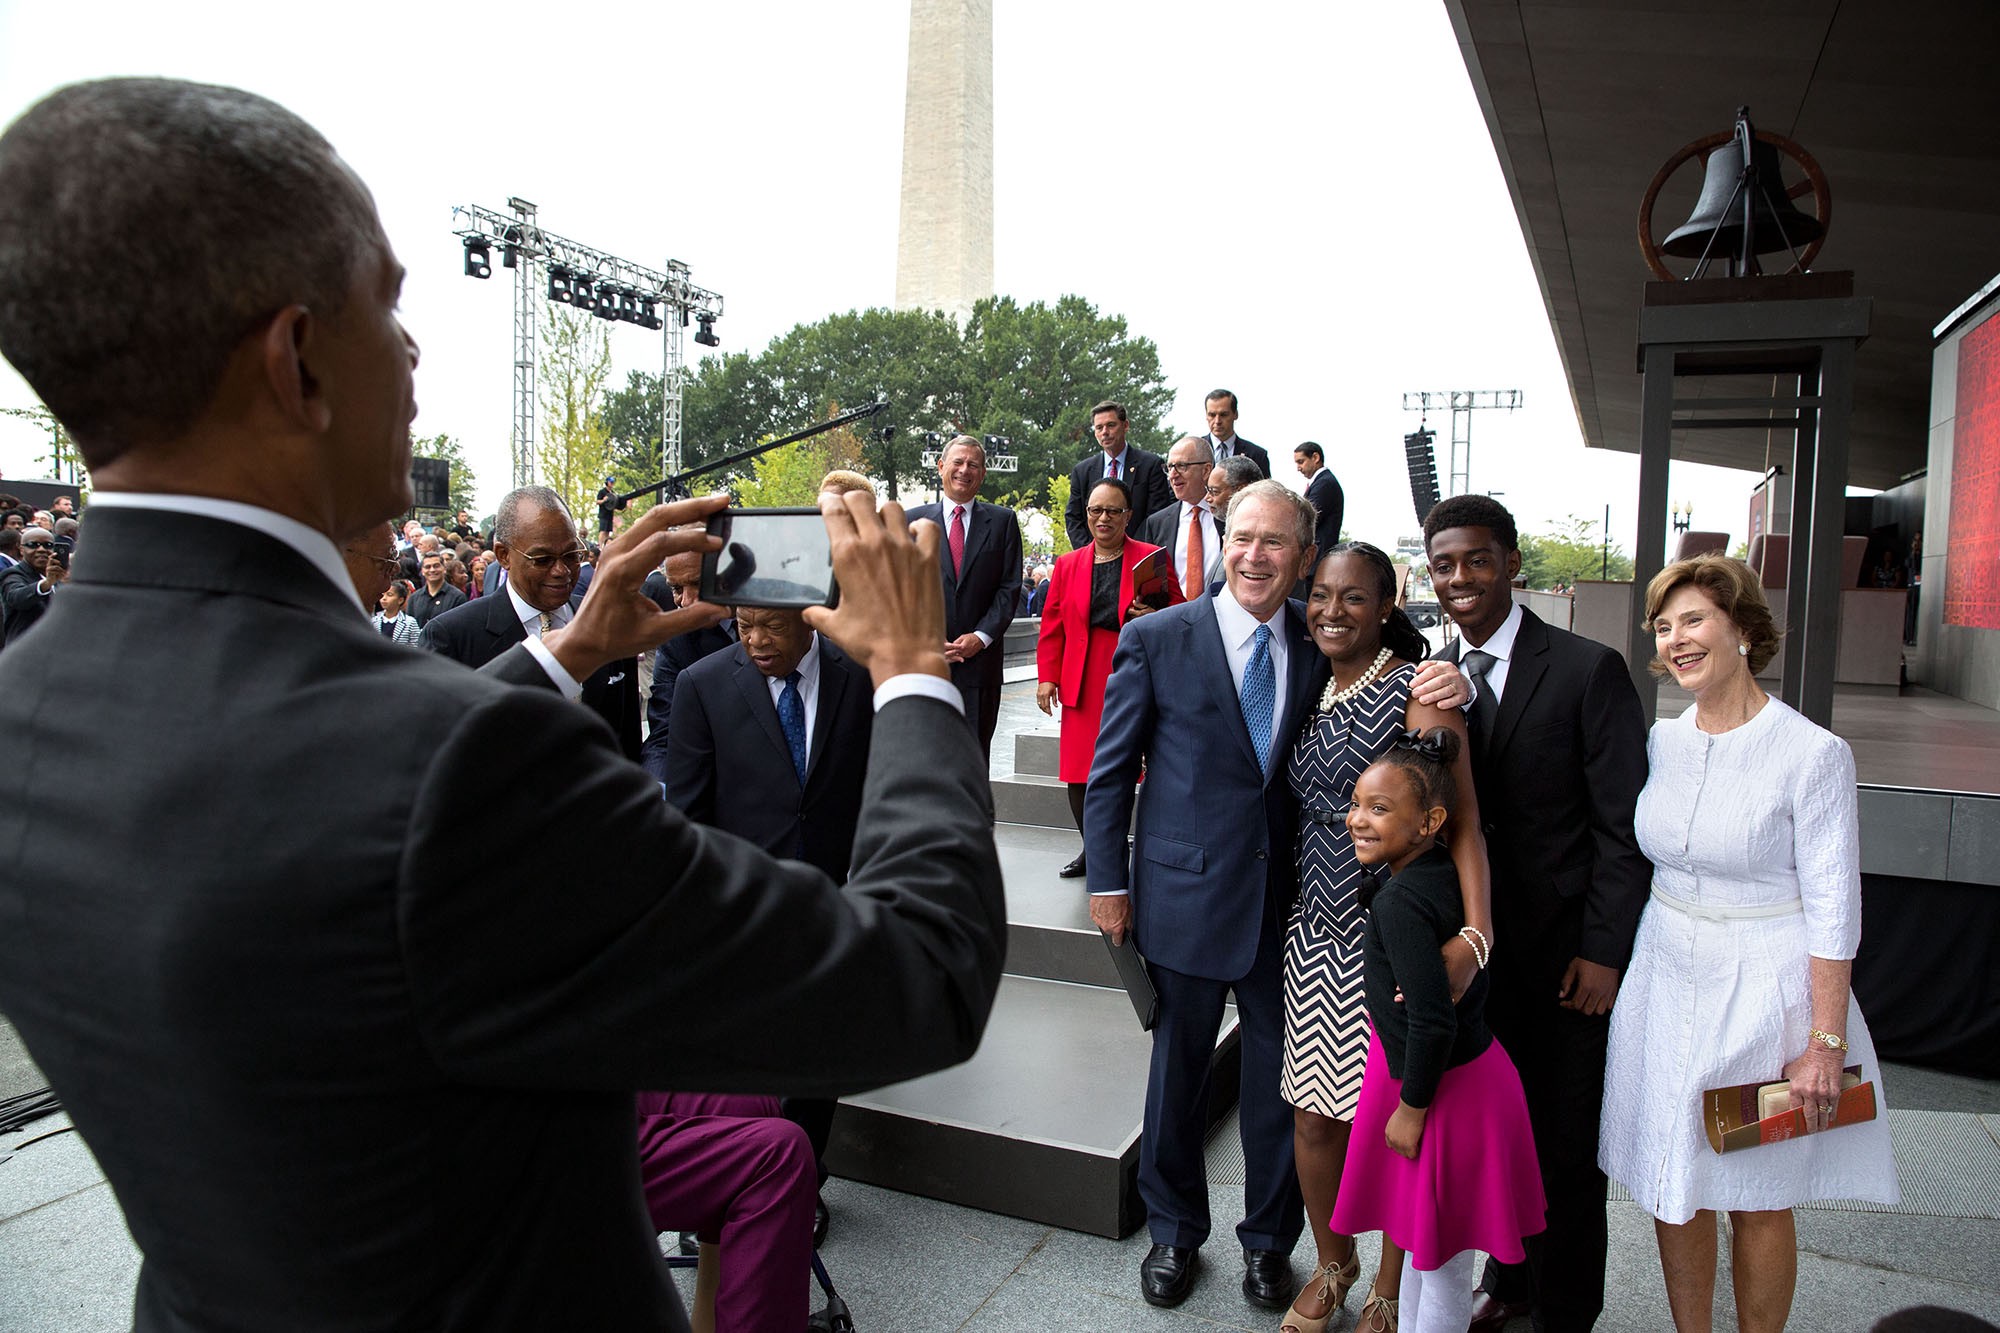  โอบามาถ่ายภาพให้อดีตประธานาธิบดีจอร์จ ดับเบิลยู. บุช และลอรา บุช ภริยา ระหว่างร่วมพิธีเปิดพิพิธภัณฑ์แอฟริกันอเมริกัน เมื่อ 24 กันยายน 2559 / Official White House Photo by Pete Souza